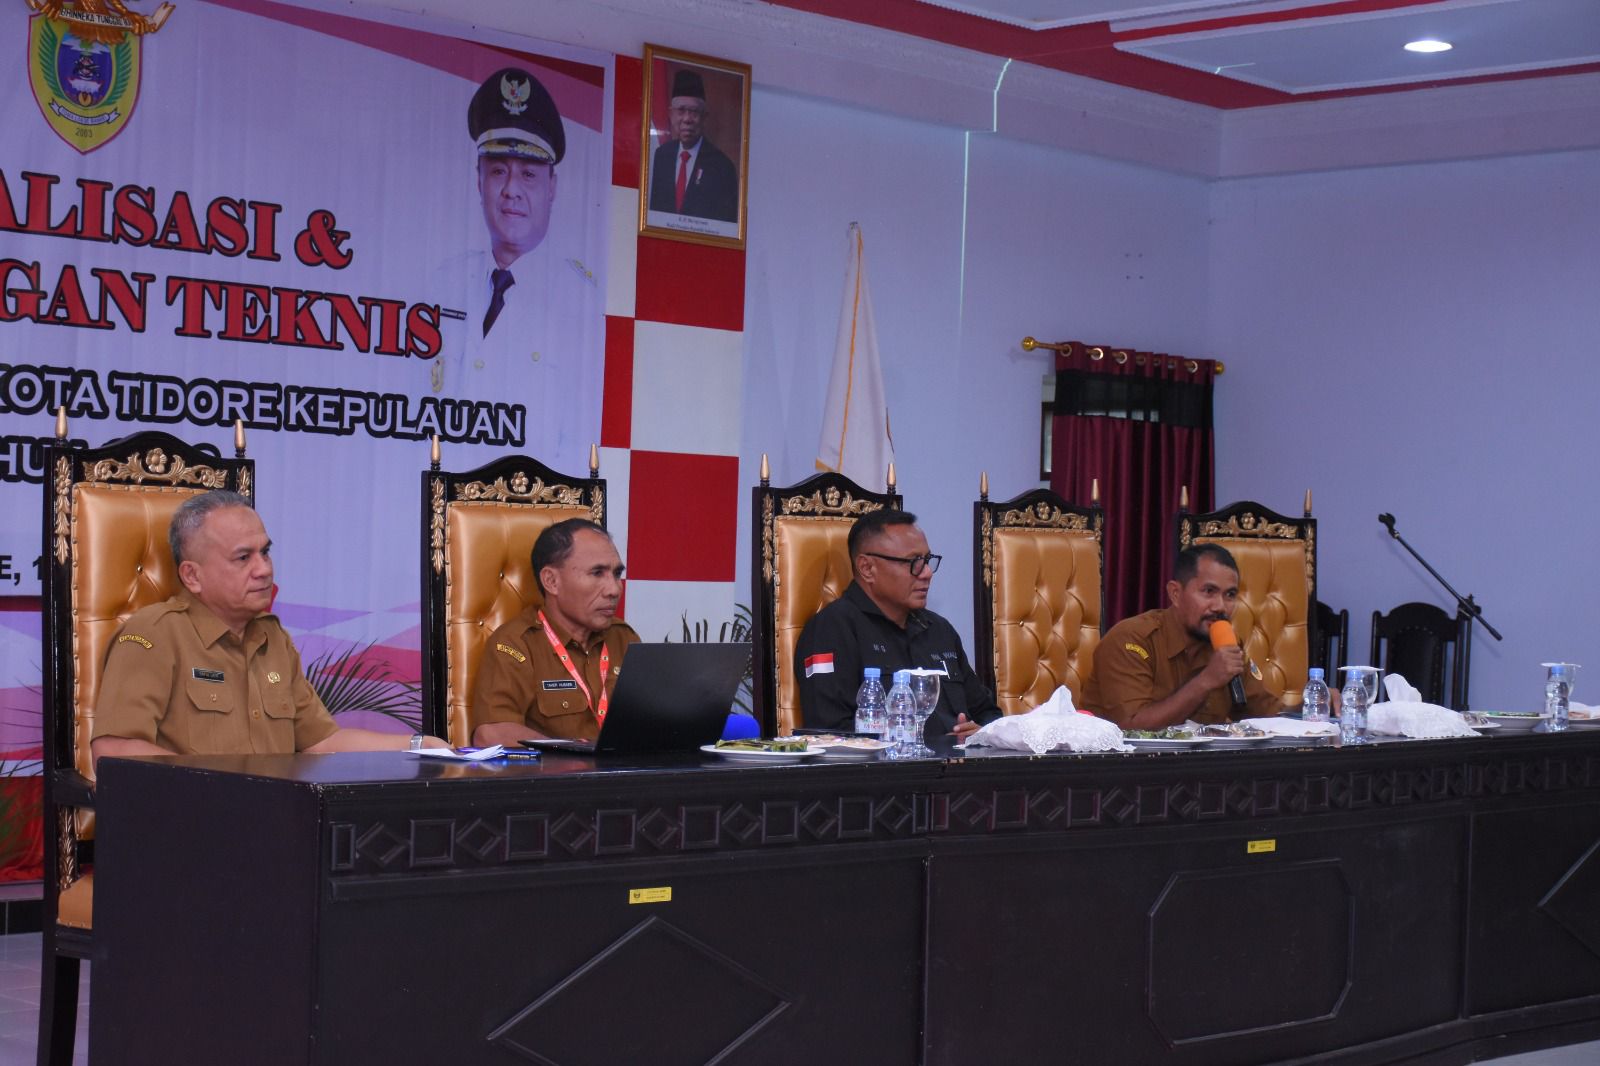 Walikota Tidore Yang Diwakili Staf Ahli Walikota Bidang Hukum, Politik dan Pemerintahan Marjan Djumati, (detikindonesia.co.id)